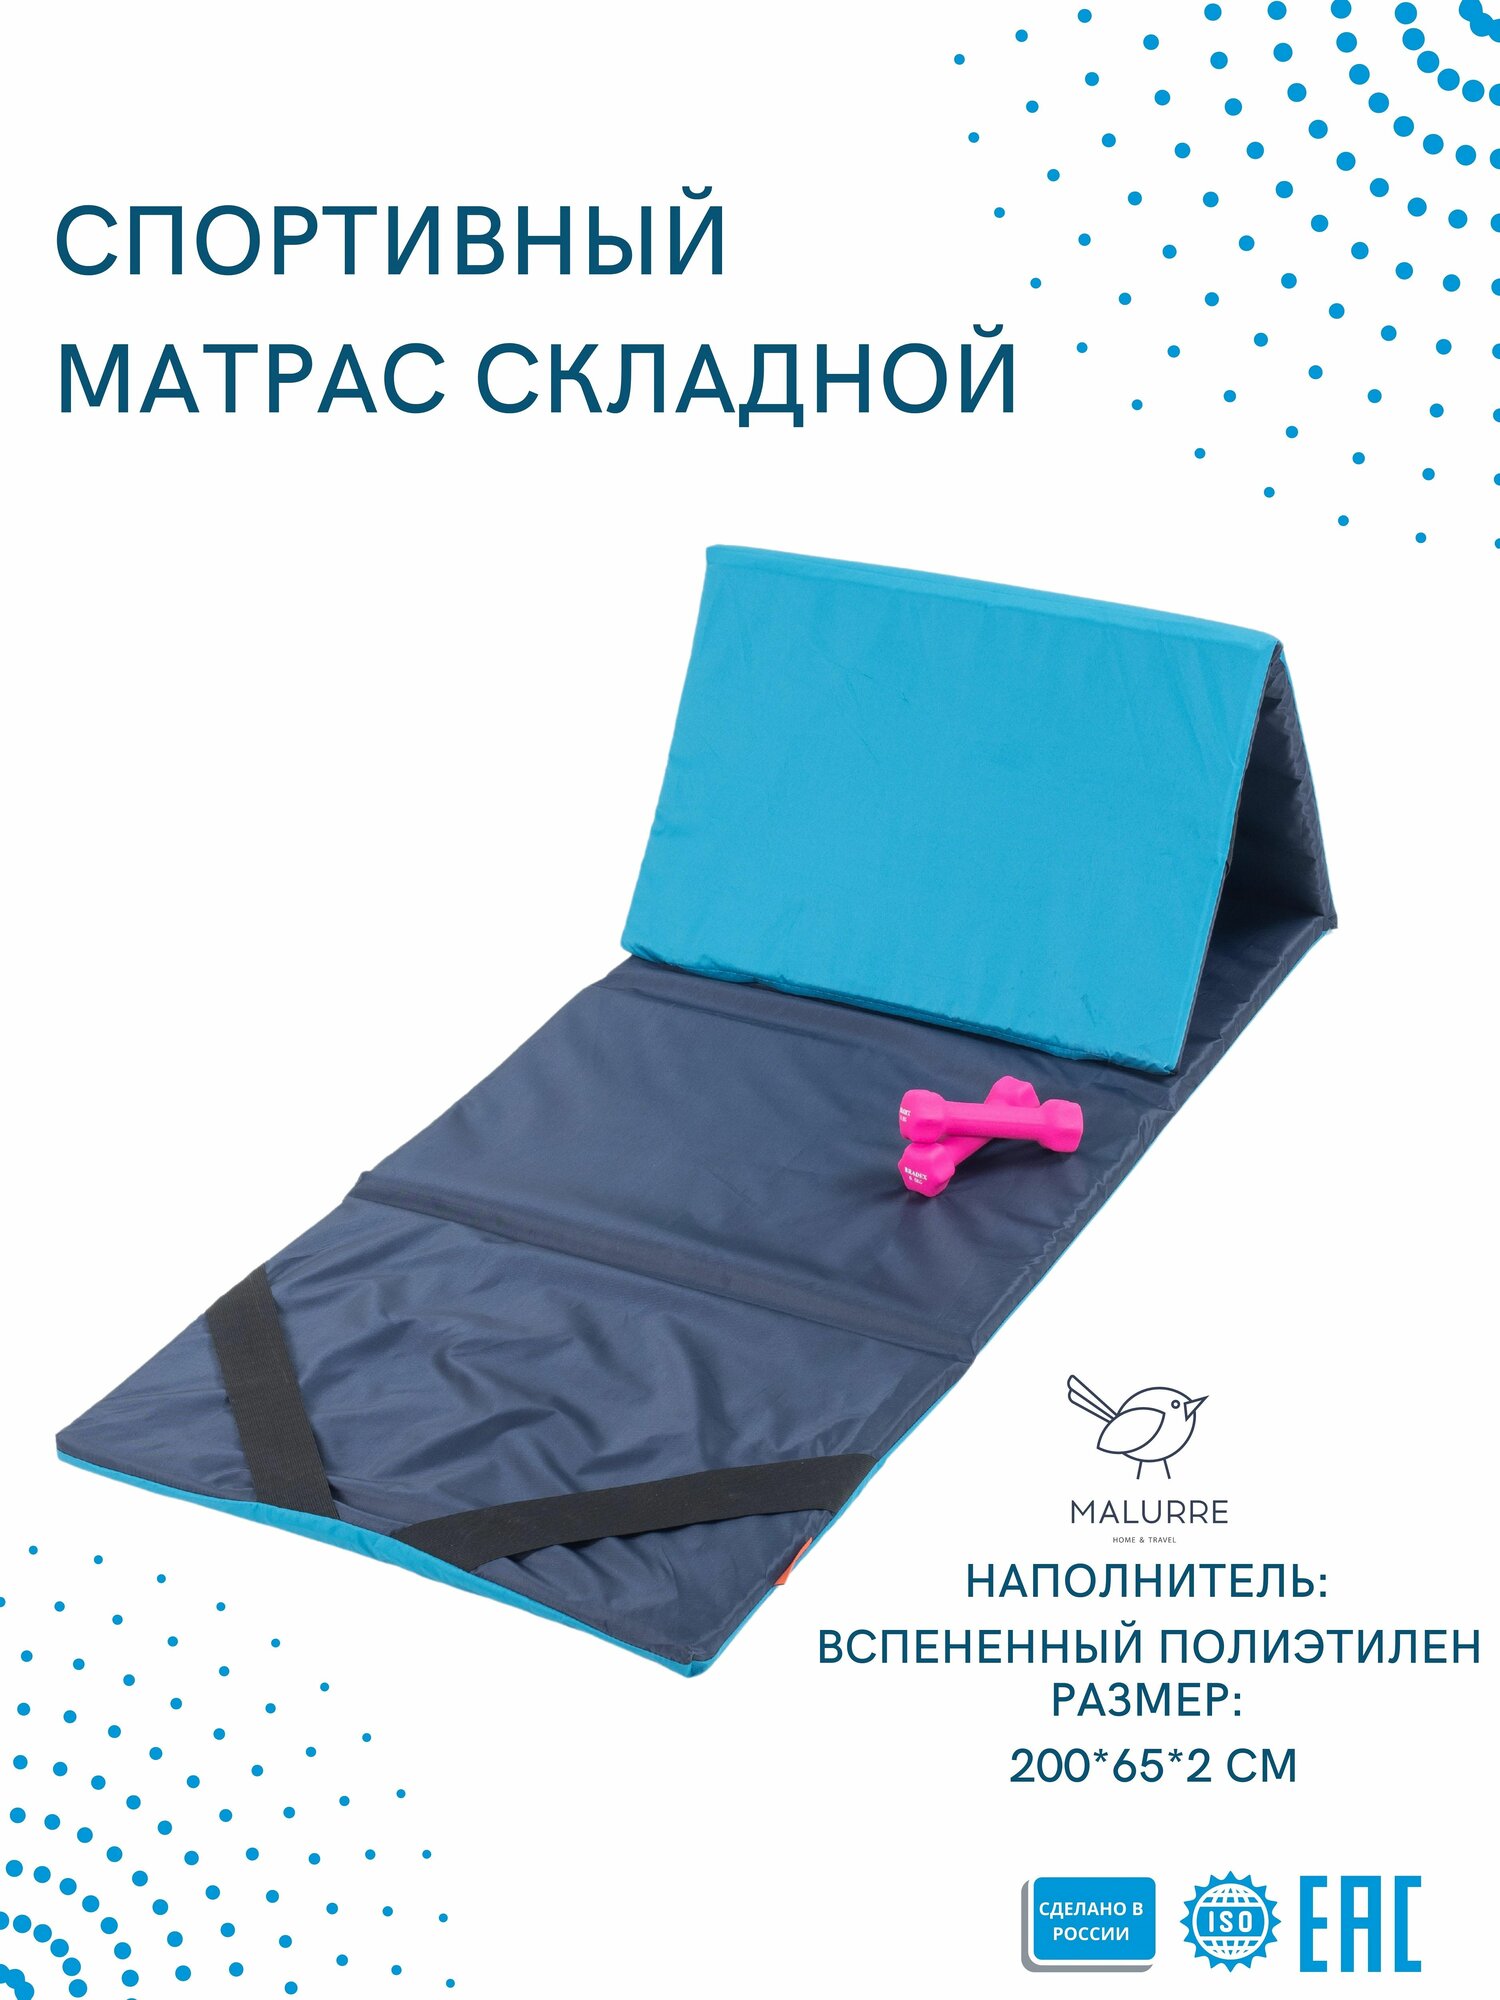 Мат гимнастический, коврик спортивный Malurre, 200*65*2 см, размер L